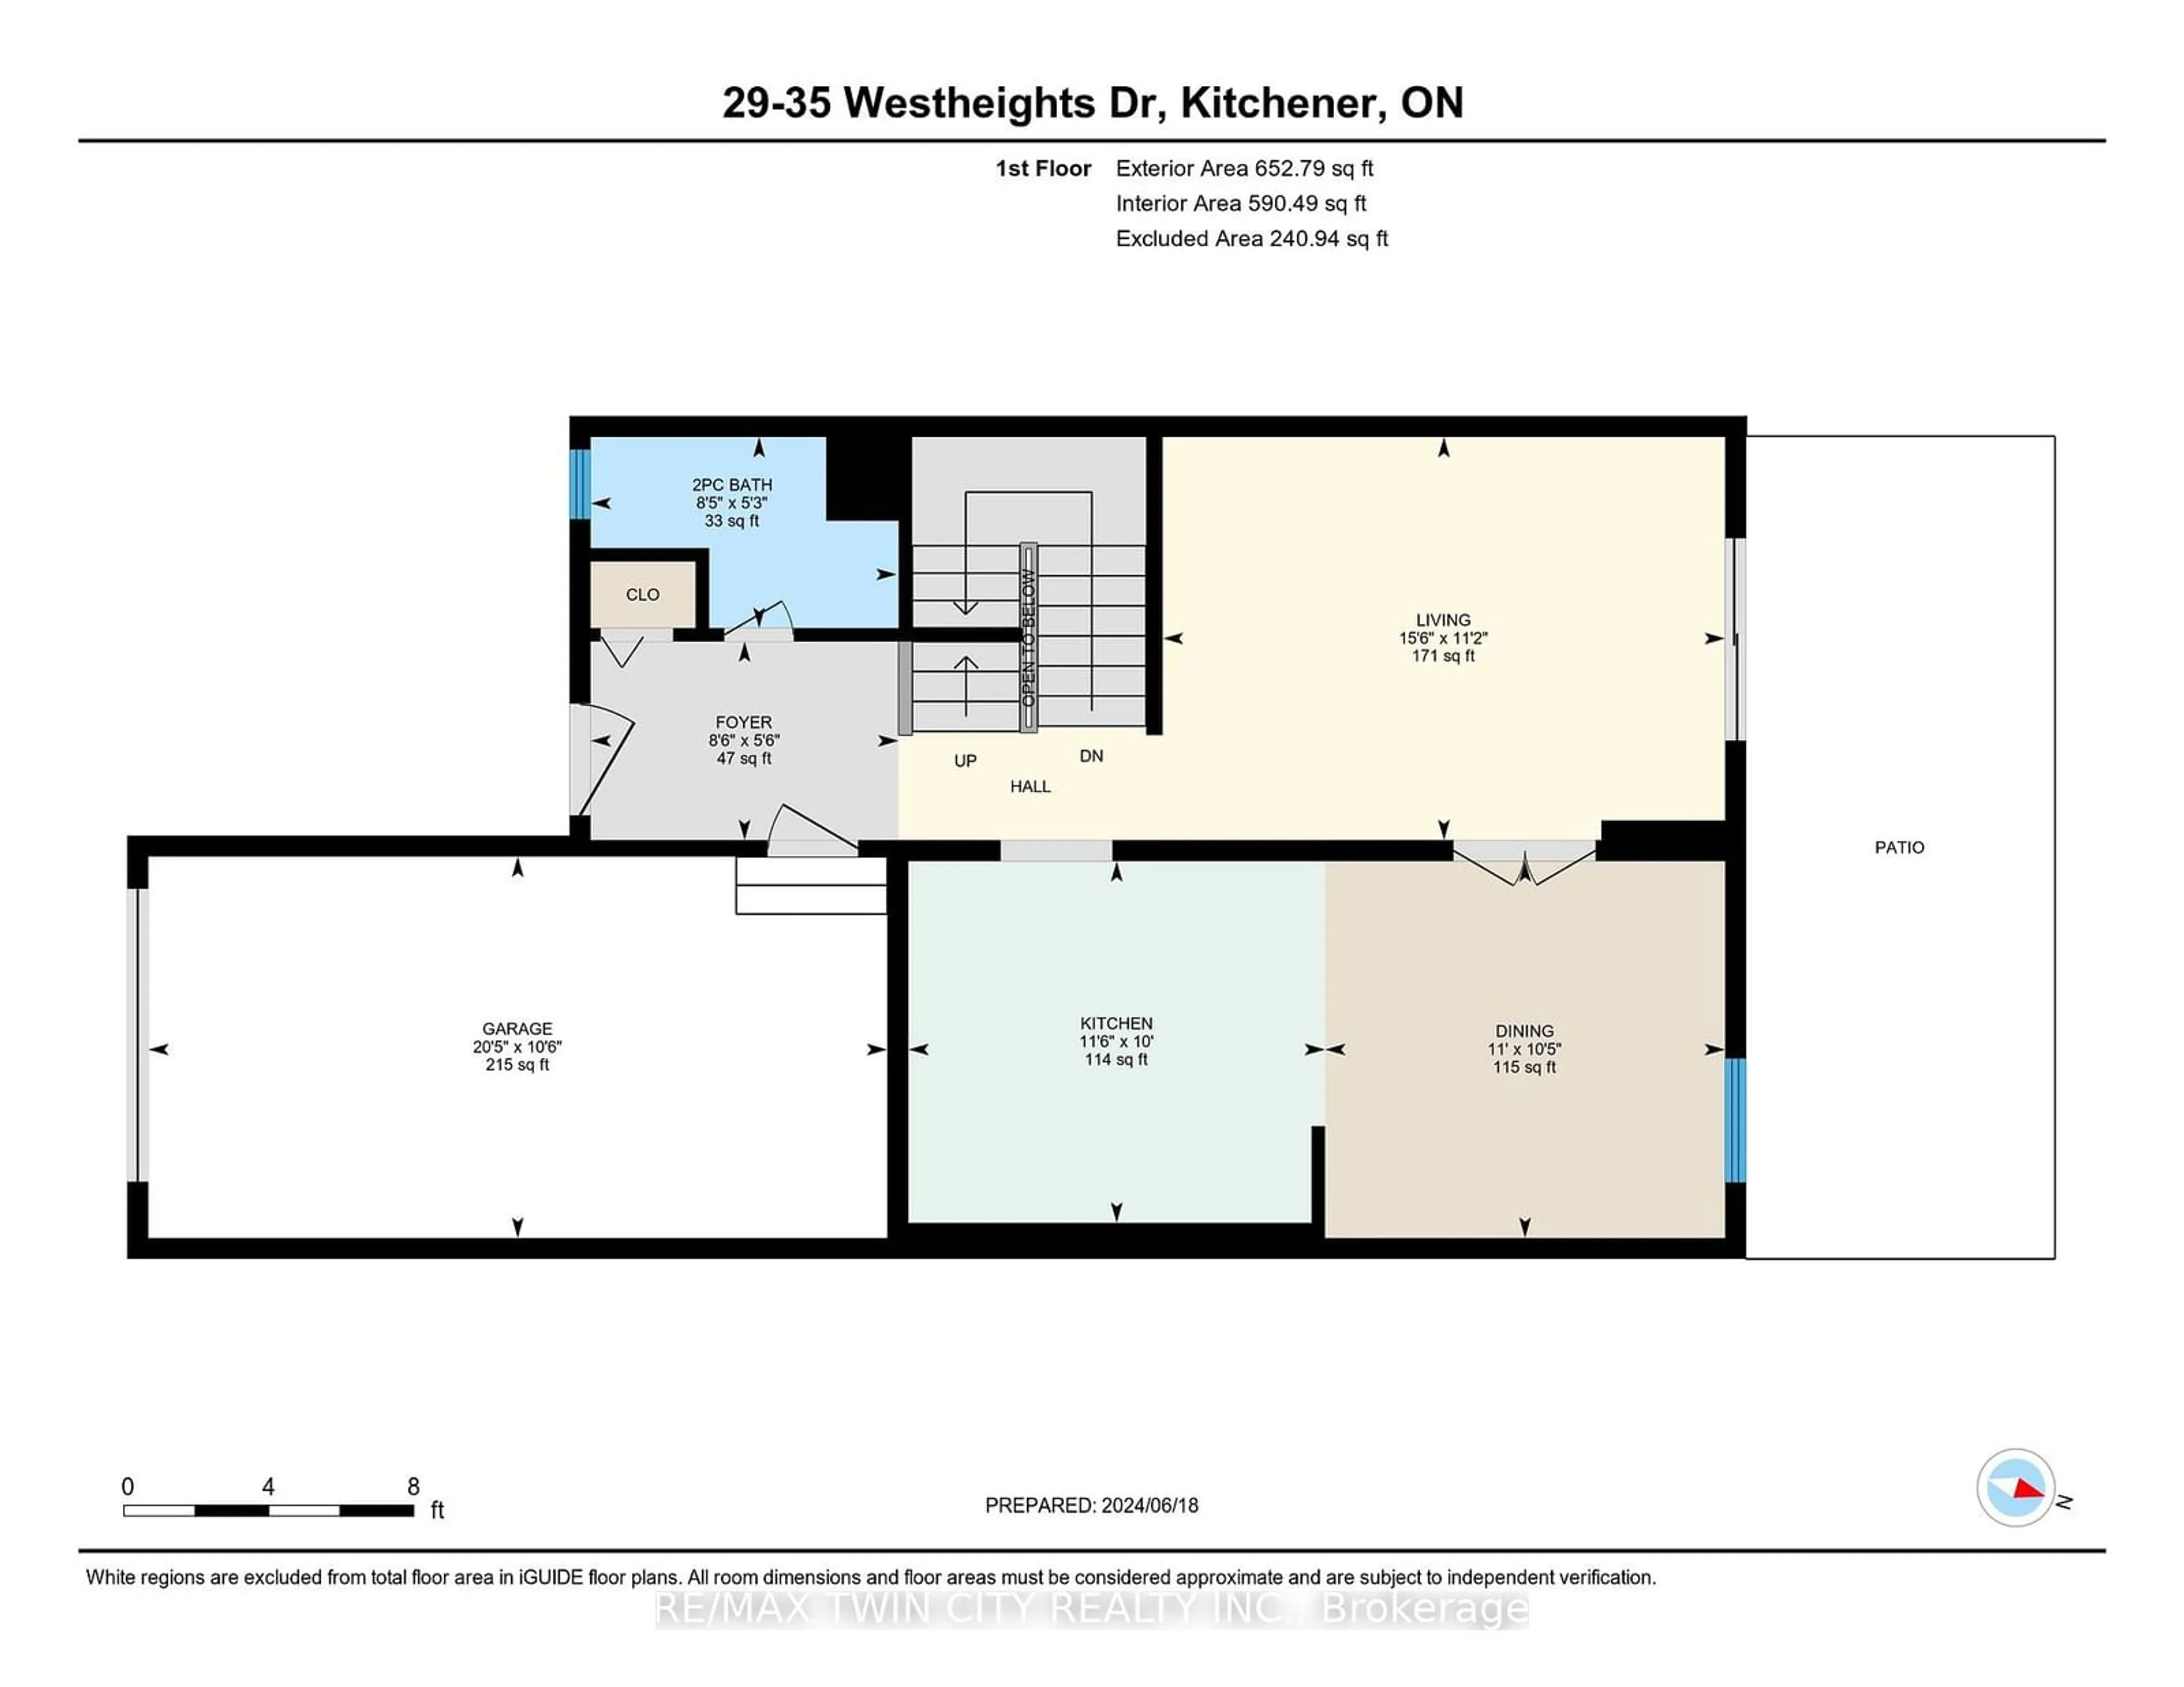 Floor plan for 35 Westheights Dr #29, Kitchener Ontario N2N 1S1